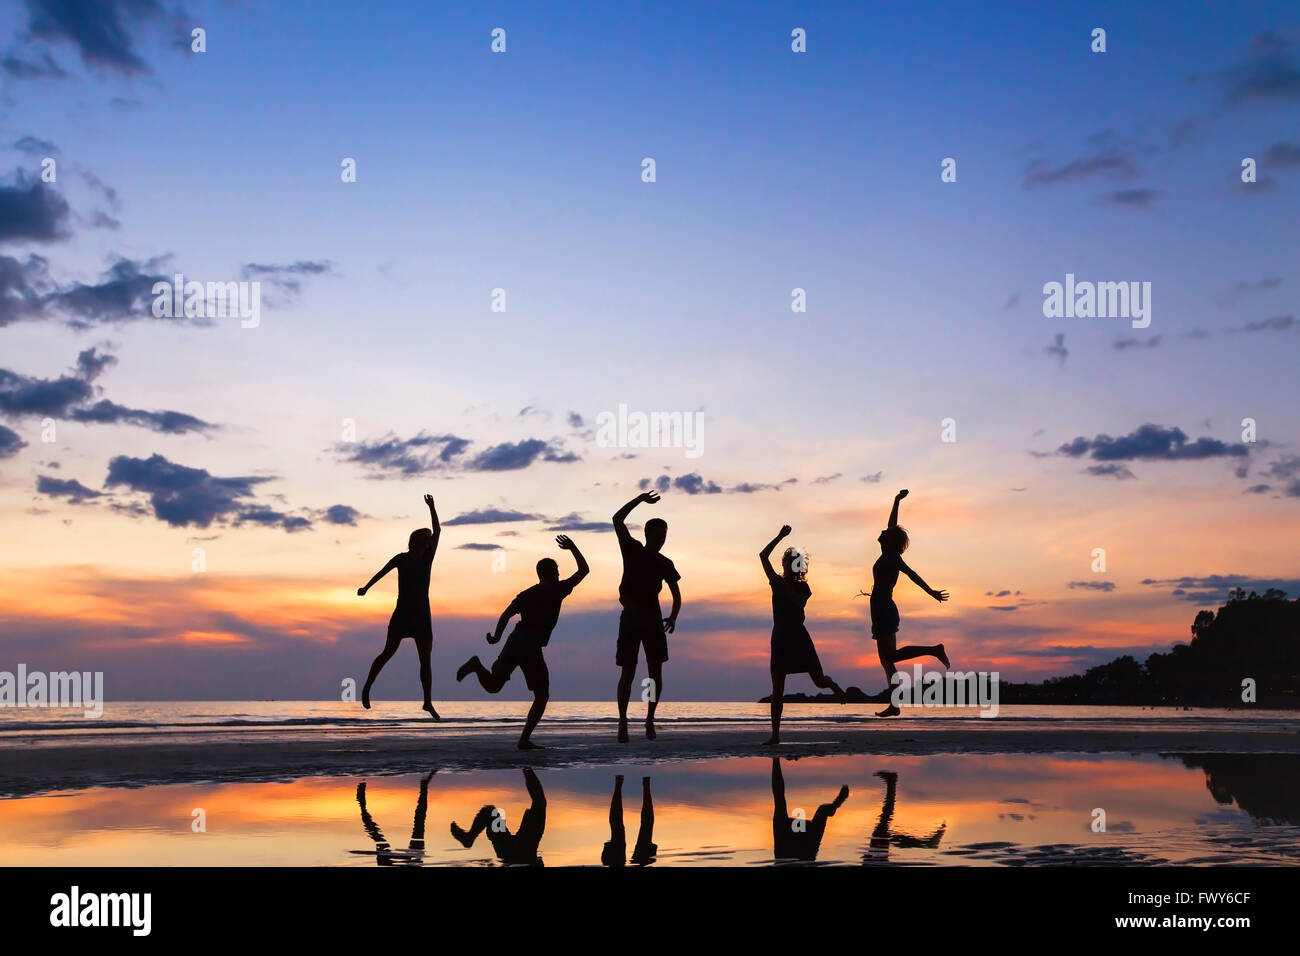 Groupe de personnes sautant sur la plage au coucher du soleil, la silhouette d'amis s'amuser ensemble Banque D'Images